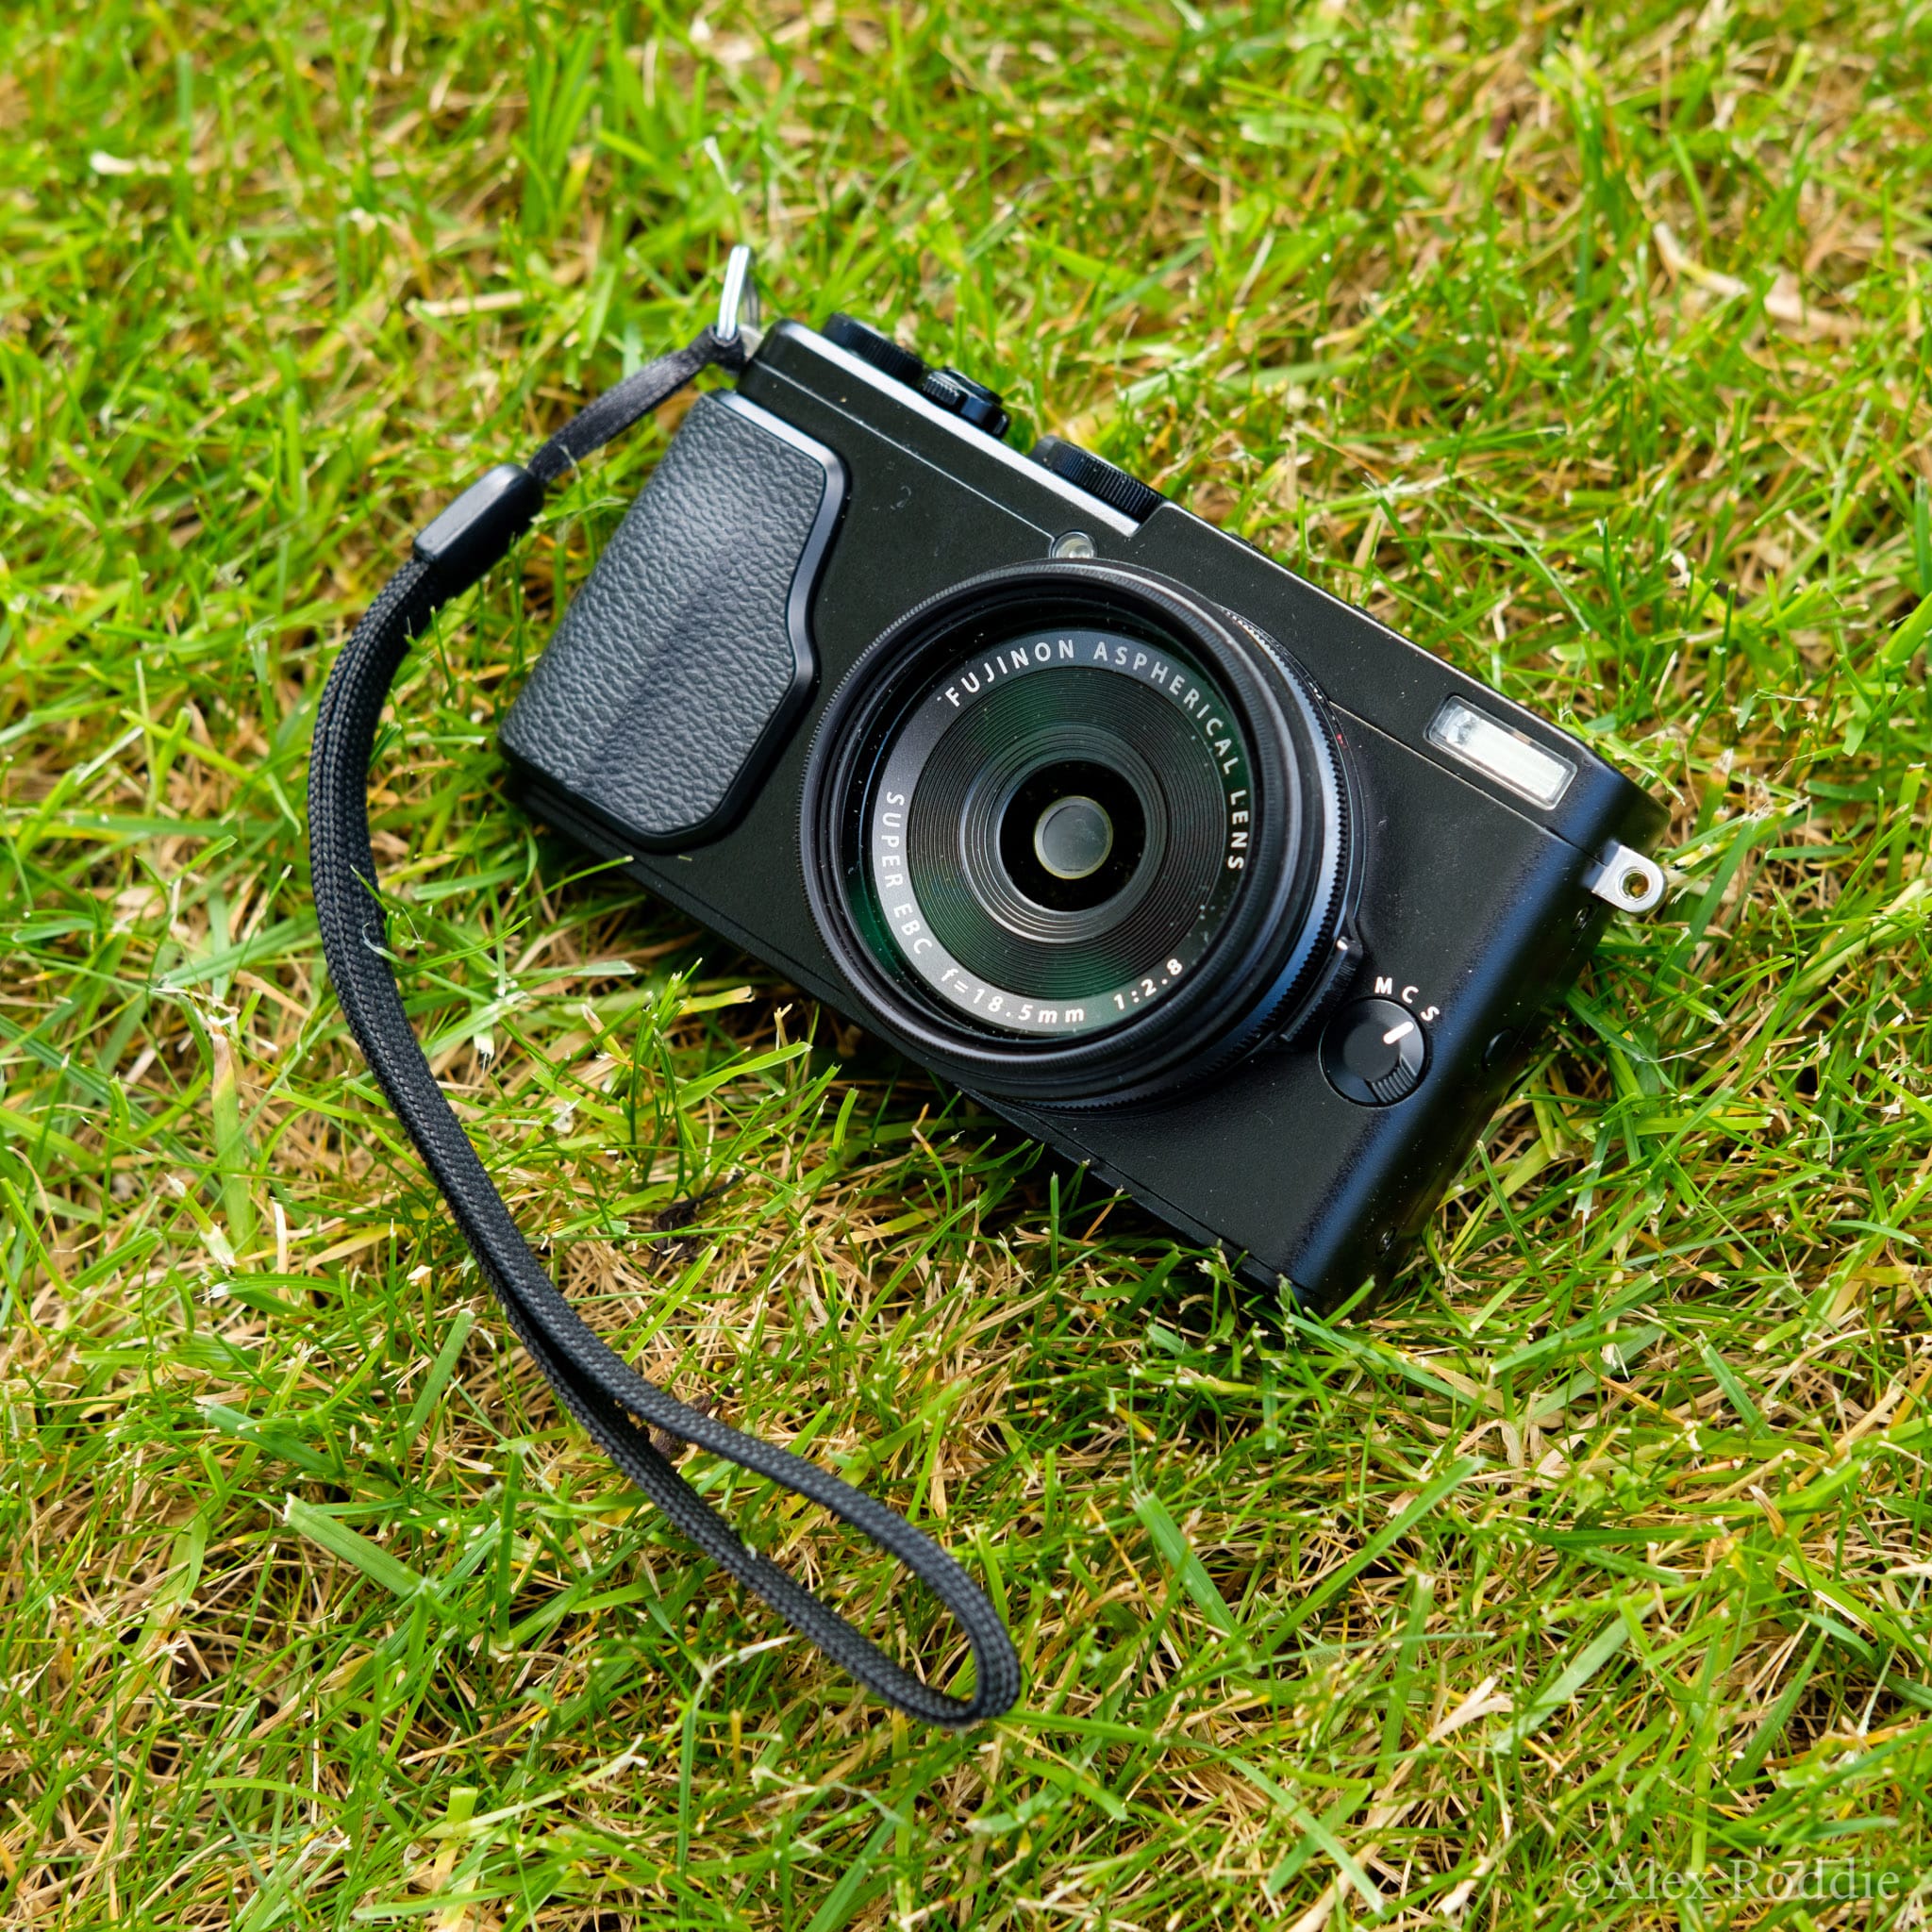 element Onmiddellijk Geavanceerde First look: Fujifilm X70. The ultimate backpacker's camera? | Alex Roddie